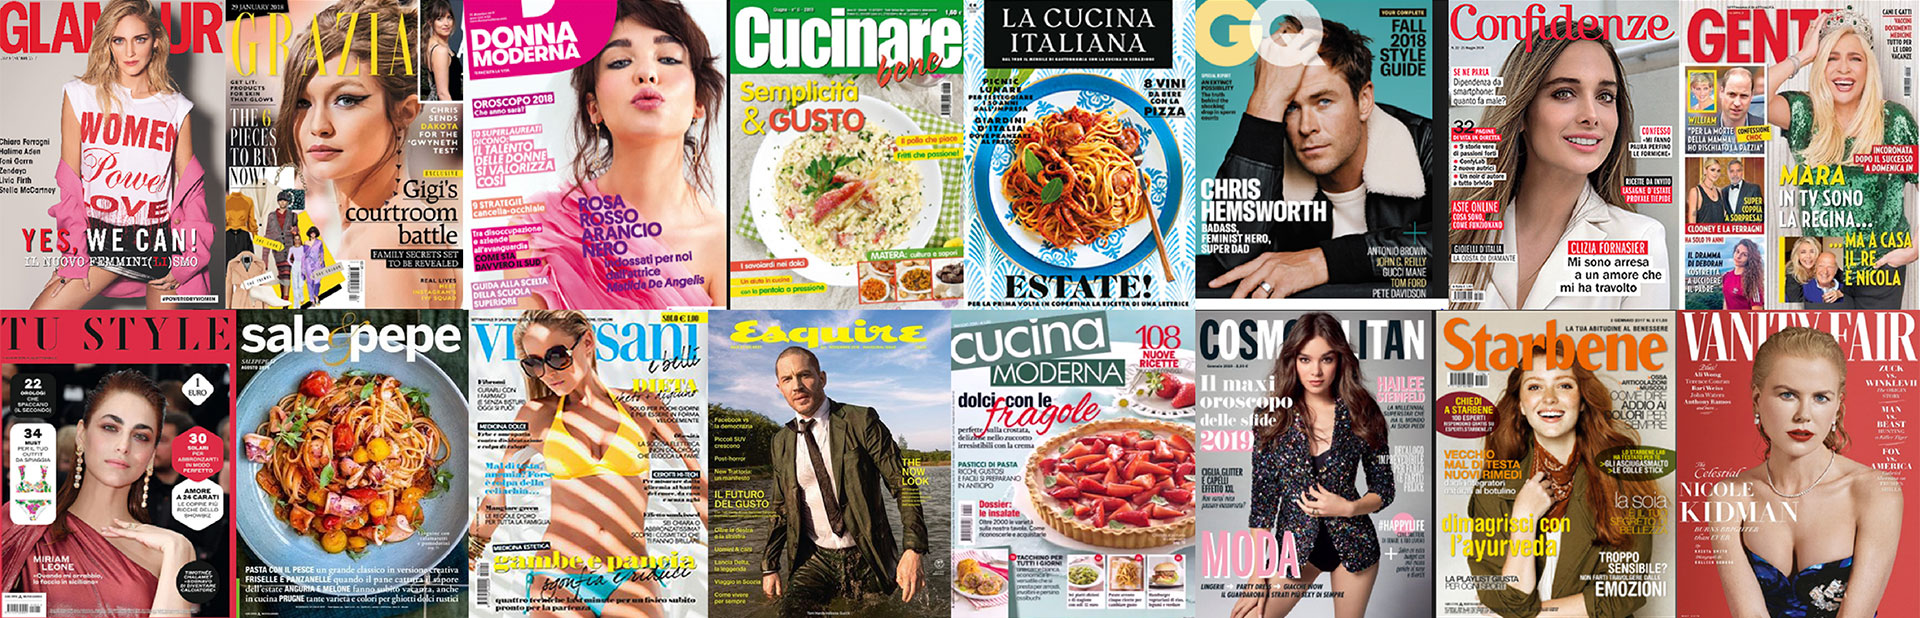 Italy magazine covers